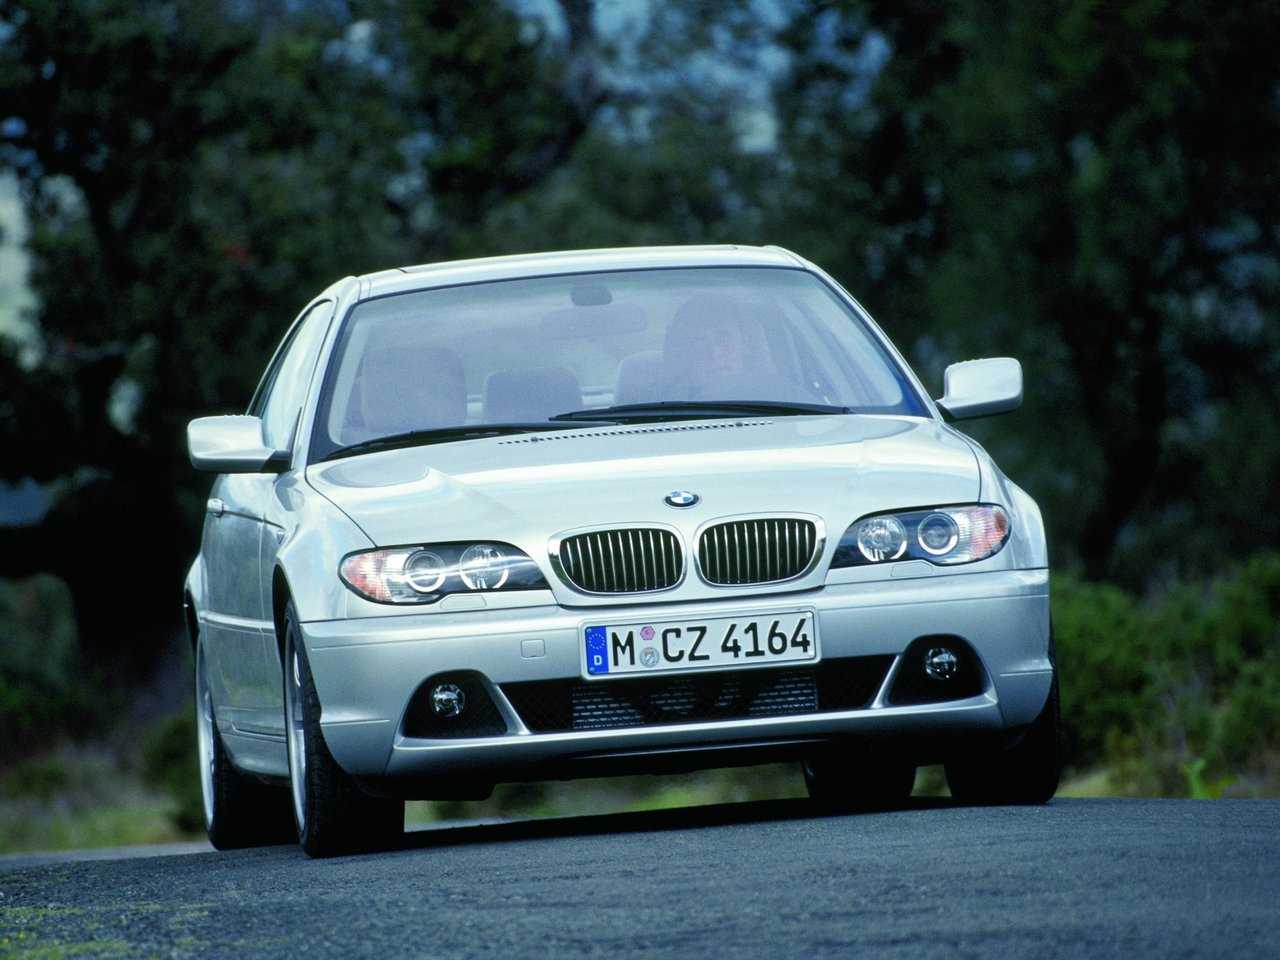 Технические характеристики BMW 320i 2002-2005 в автокаталоге CarExpertru Размеры и масса BMW 320i 2002-2005 Клиренс BMW 3-series Мощность двигателя BMW 320i 2002-2005 Расход топлива BMW 320i 2002-2005 Максимальная скорость BMW 320i 2002-2005 Подвеска BMW